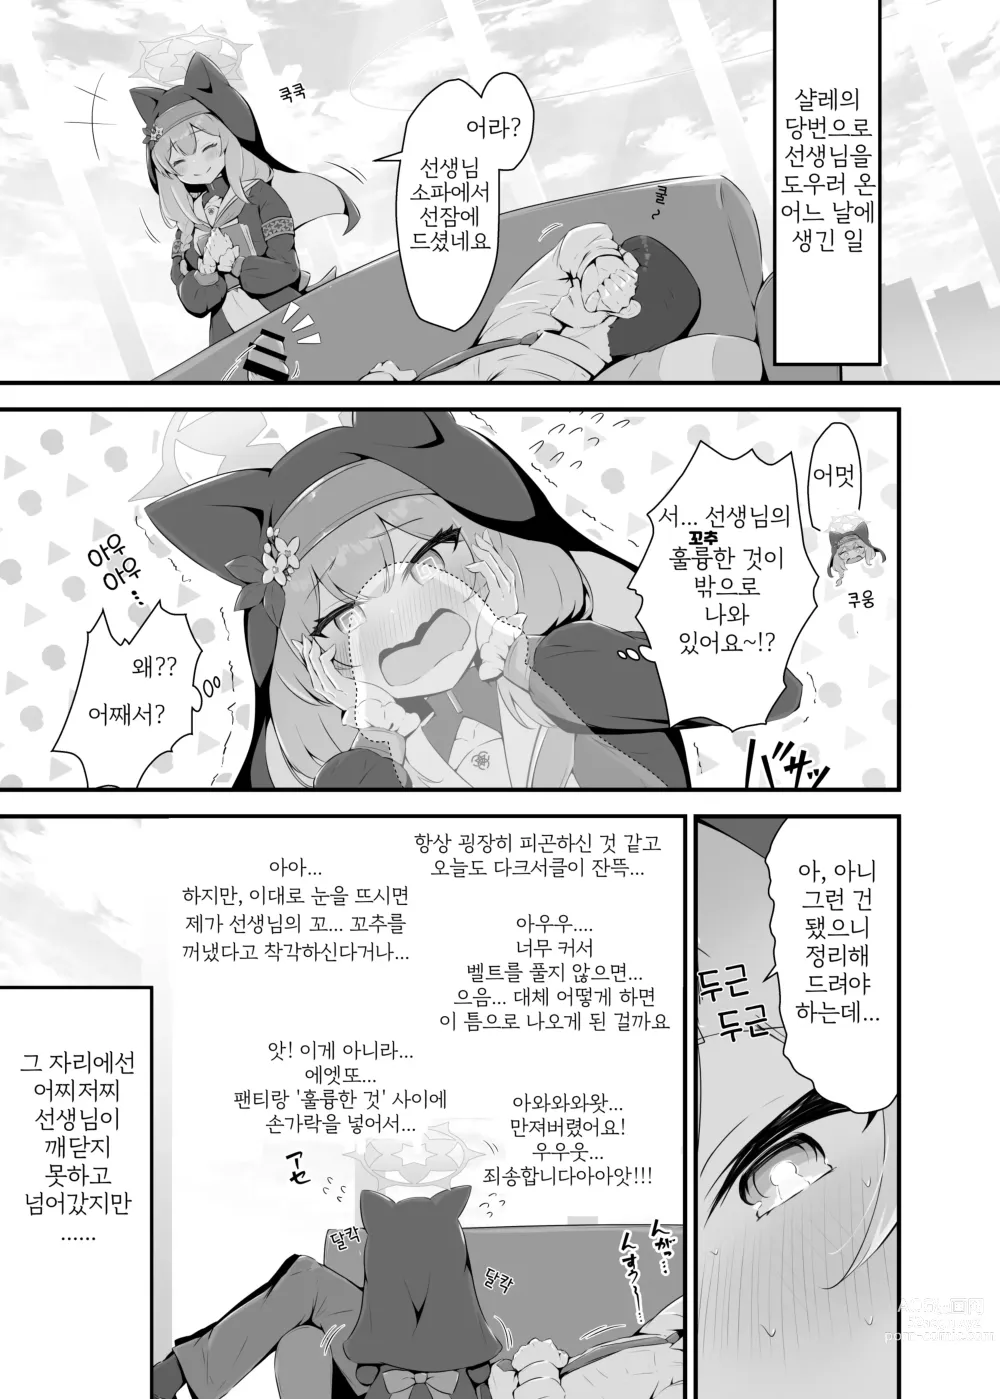 Page 3 of doujinshi 마리가 선생님의 훌륭한 것을 봐버린 결과...!